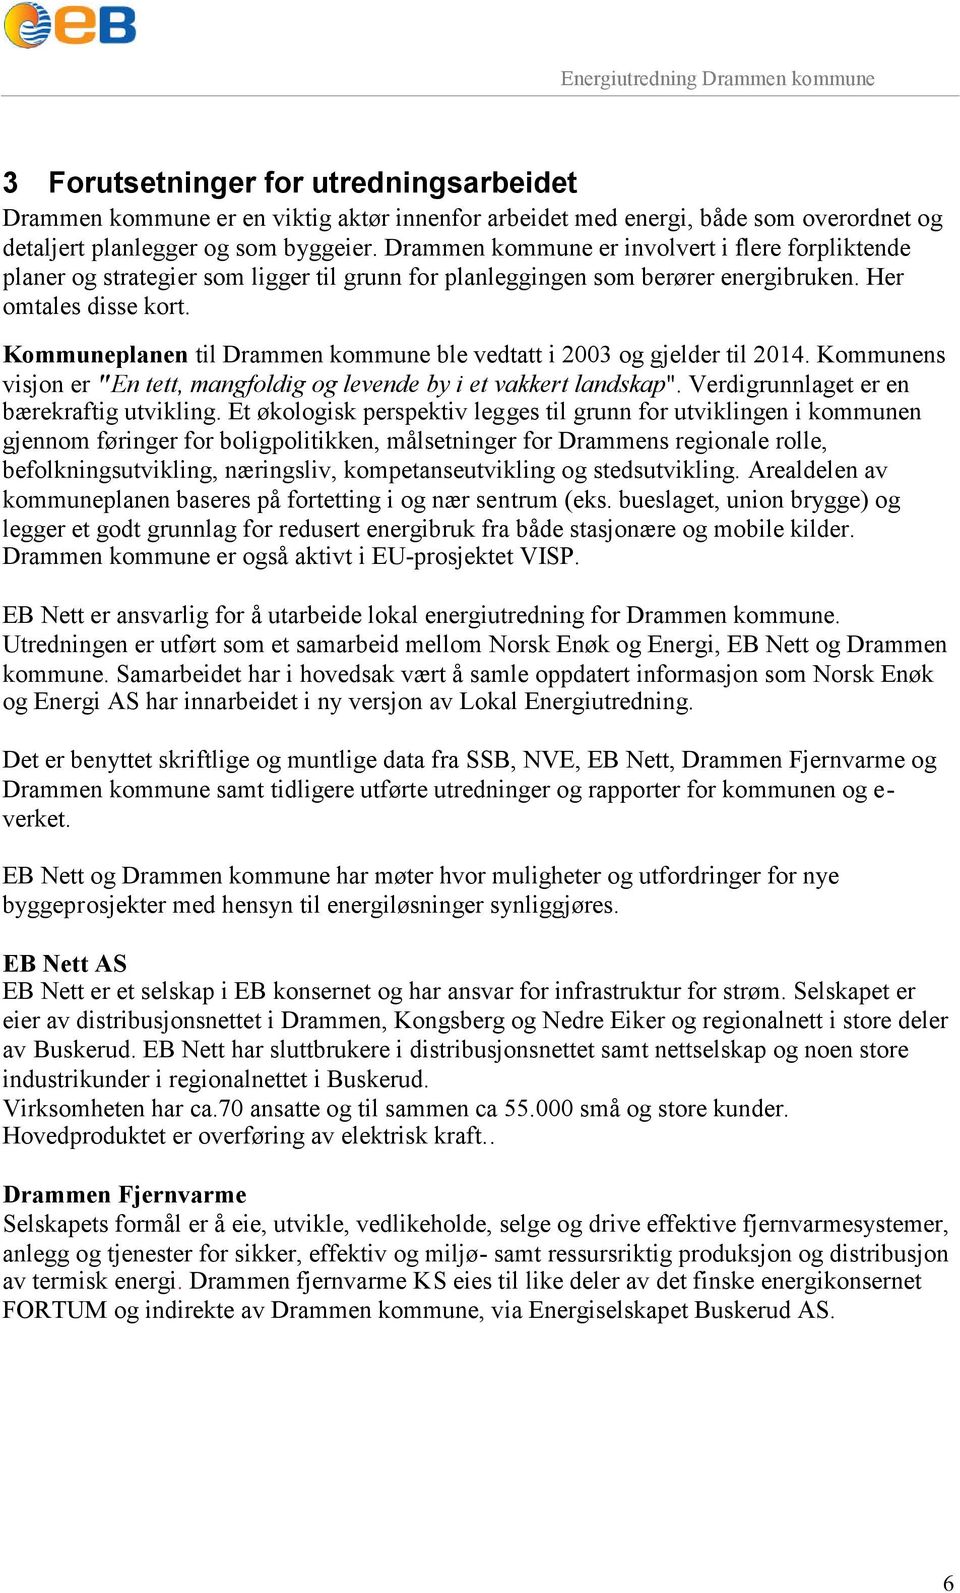 Kommuneplanen til Drammen kommune ble vedtatt i 2003 og gjelder til 2014. Kommunens visjon er "En tett, mangfoldig og levende by i et vakkert landskap". Verdigrunnlaget er en bærekraftig utvikling.